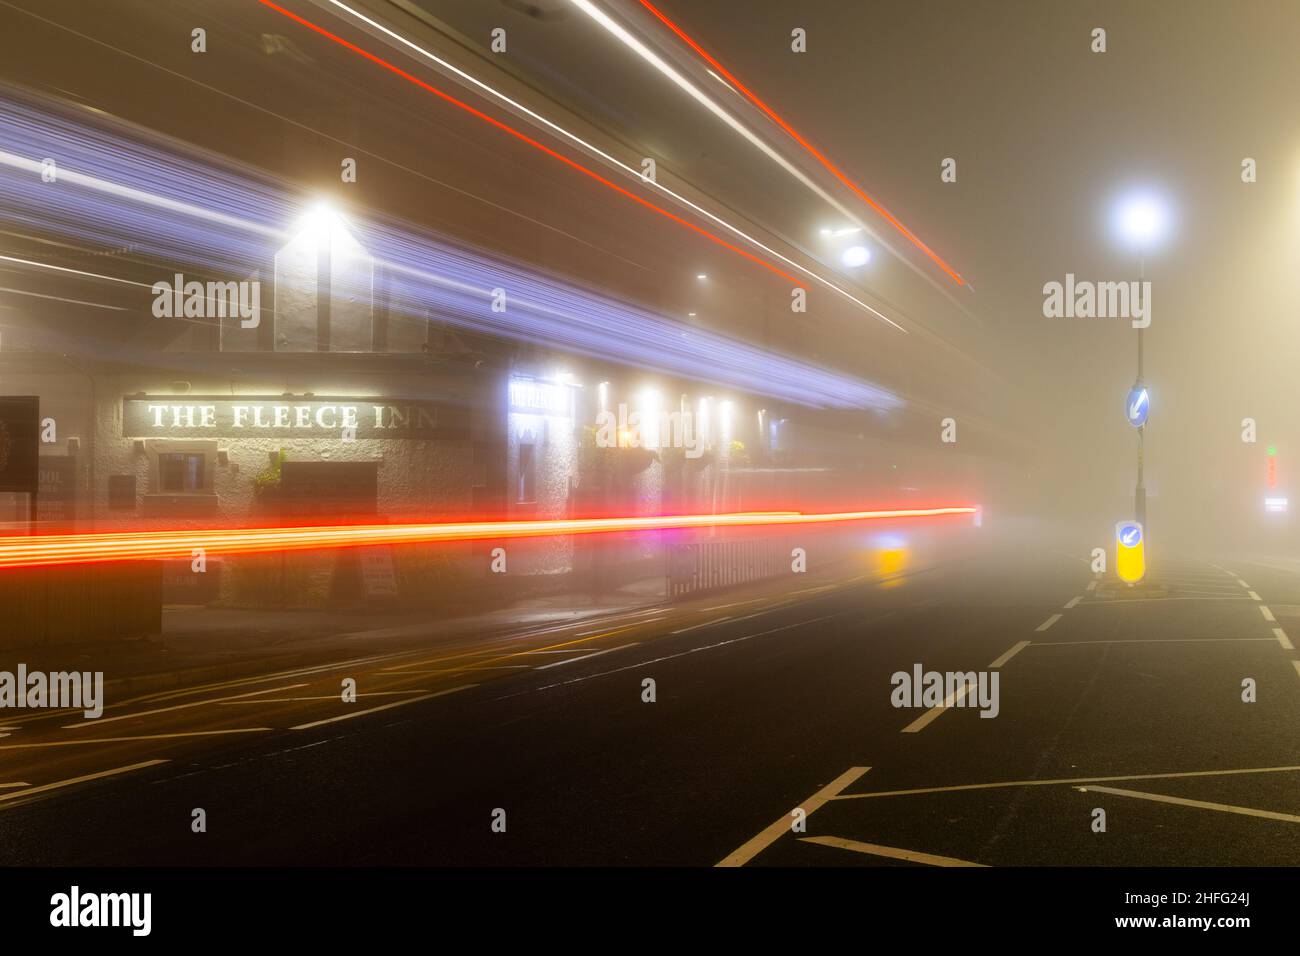 British pub, The Fleece Inn, shot in morning fog showing light streaks of passing cars. Stock Photo